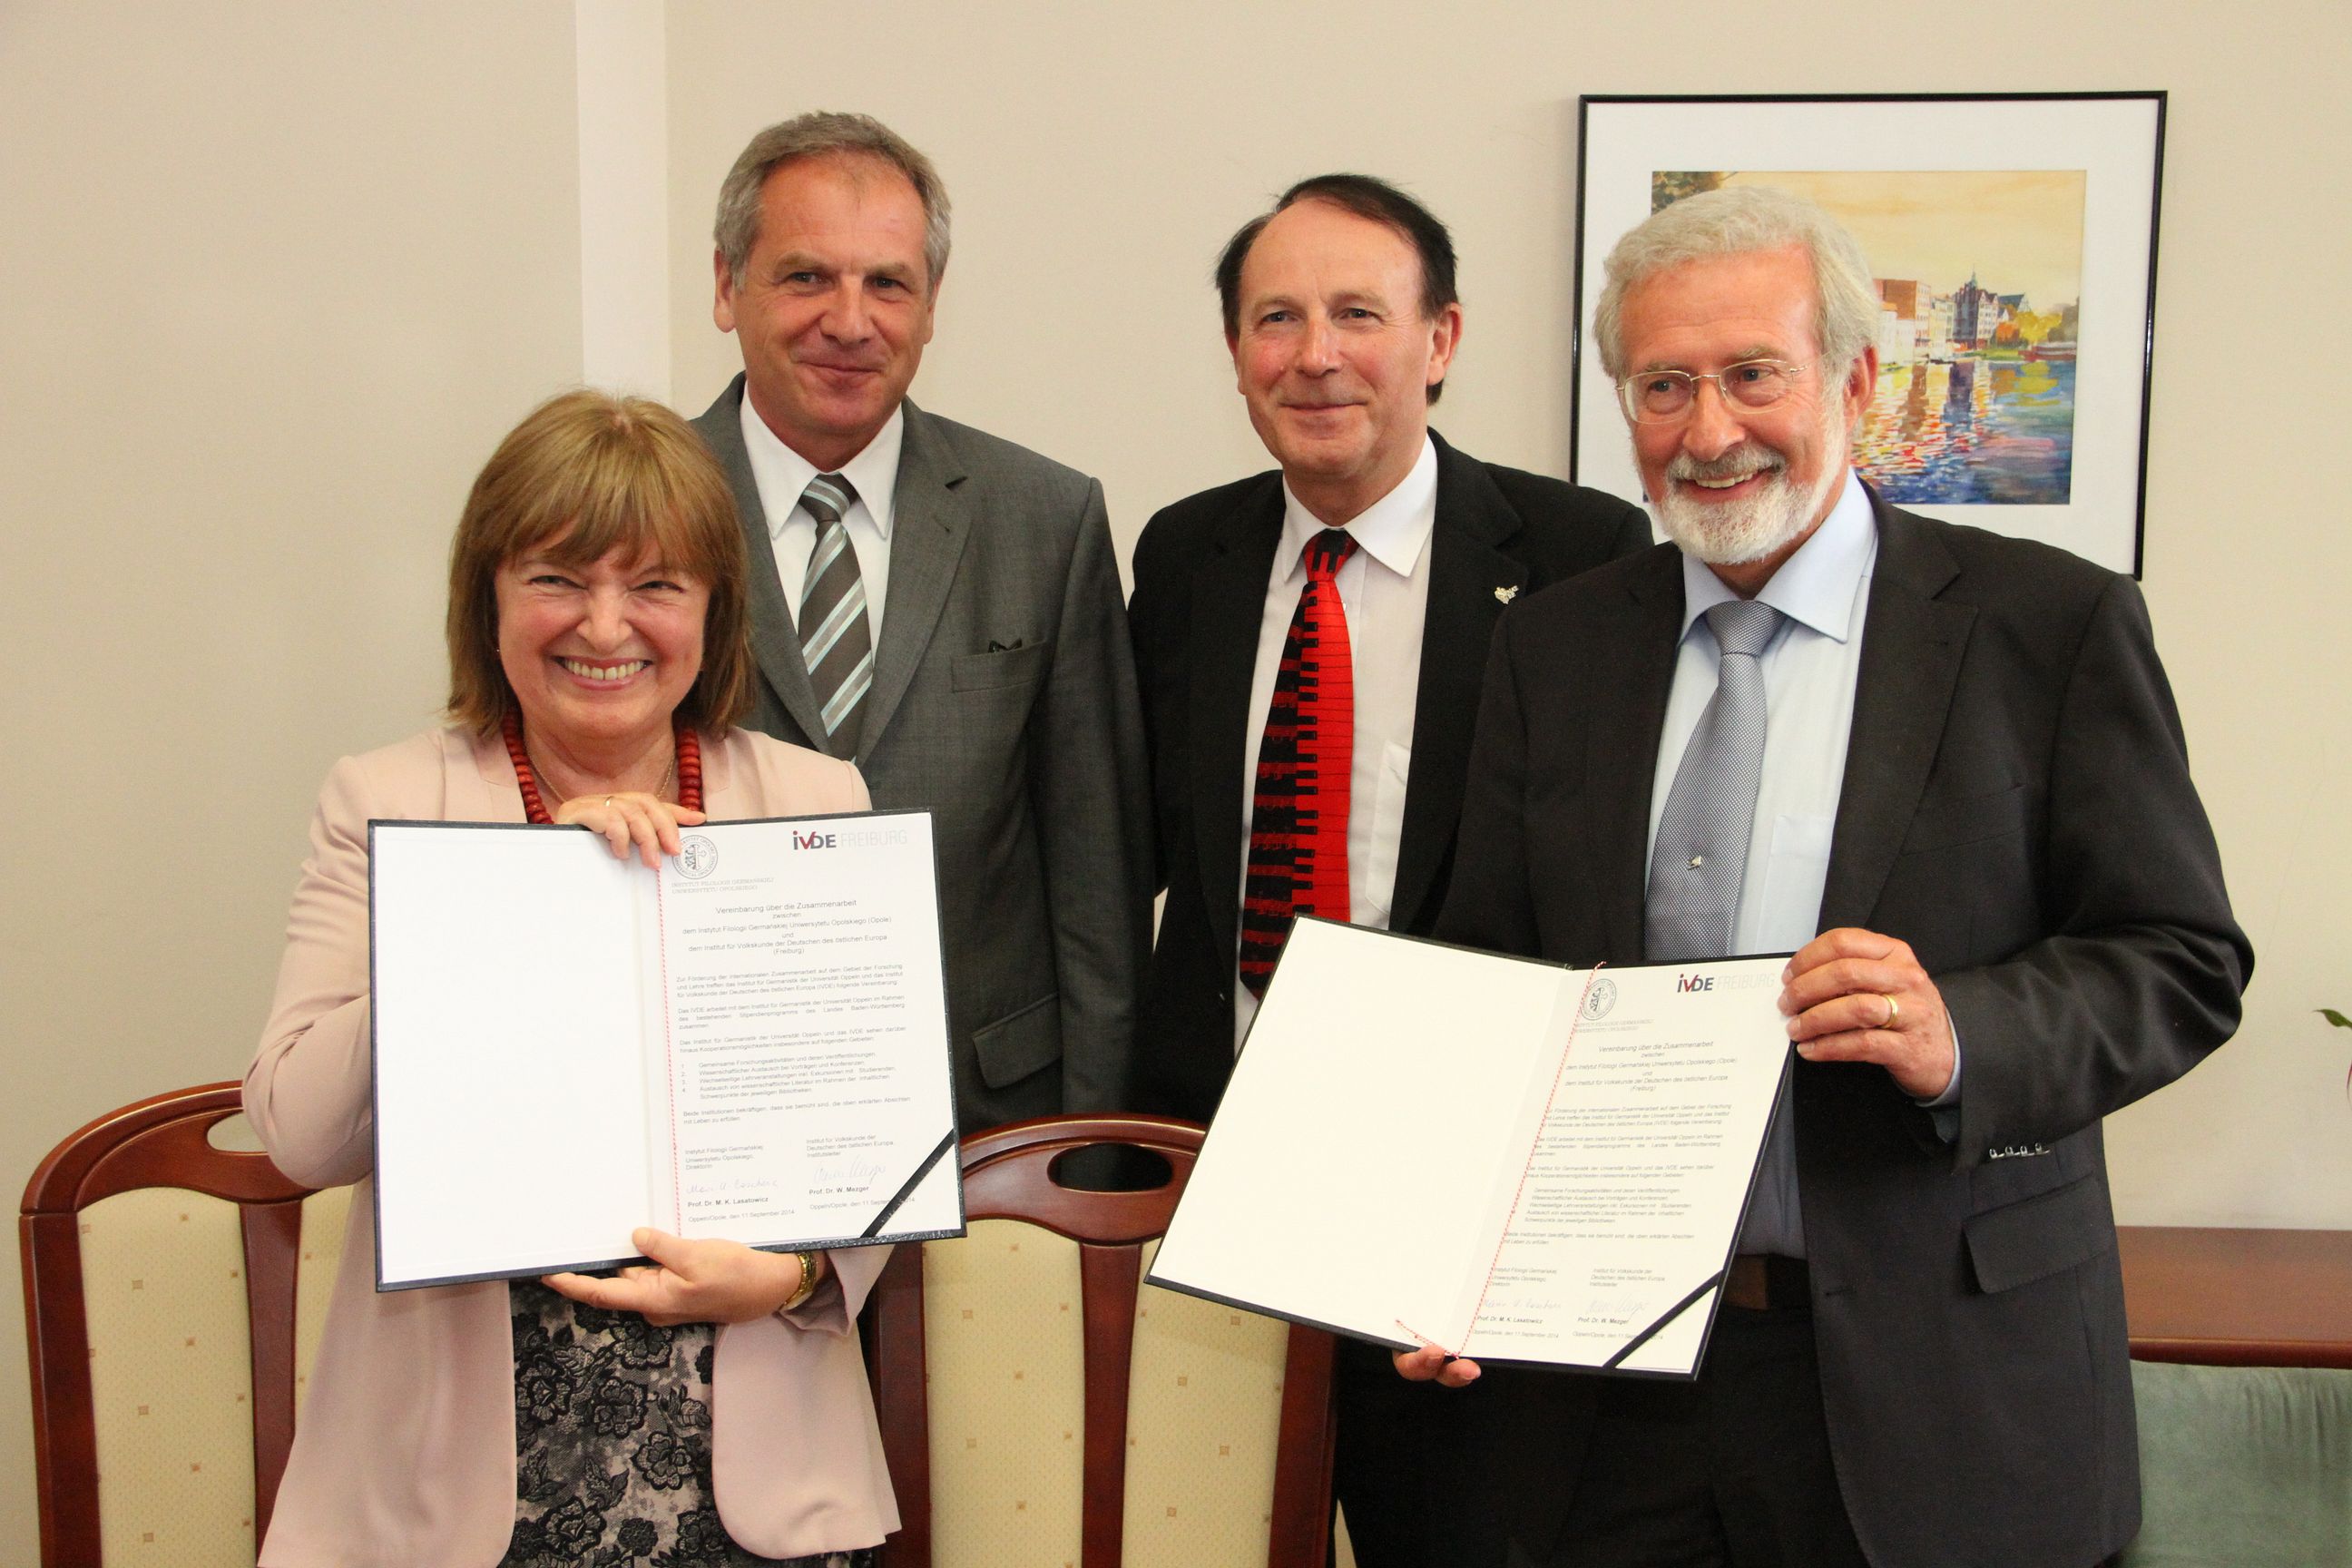 Zdjęcie nagłówkowe otwierające podstronę: Podpisanie umowy o współpracy naukowej z Instytutem Etnologii Niemców Europy Wschodniej we Freiburgu